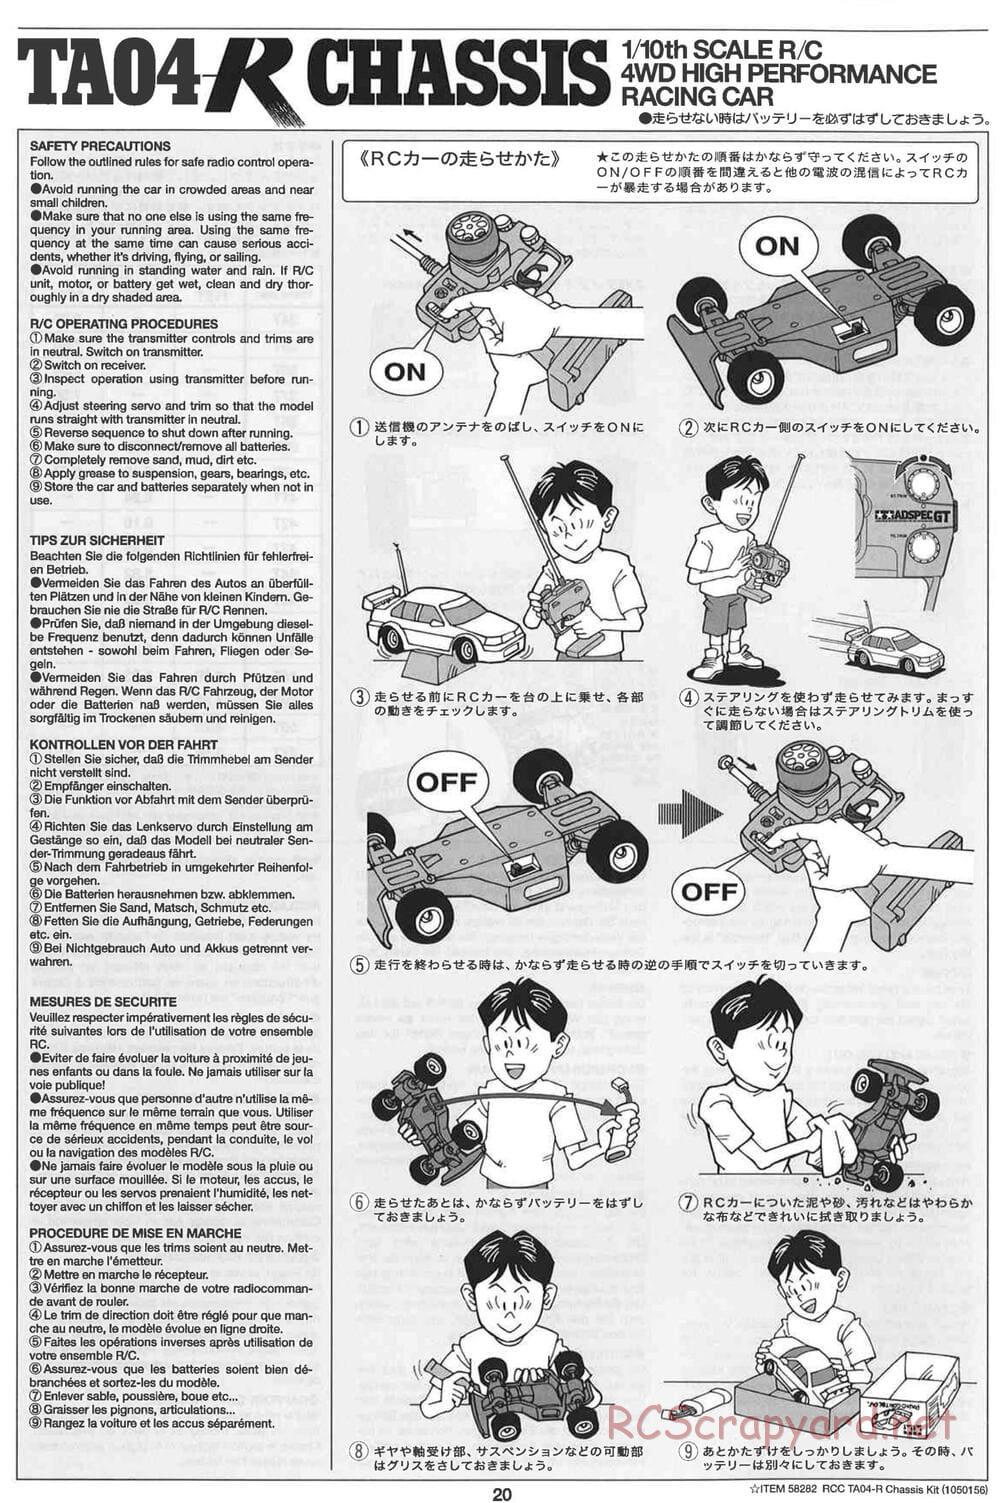 Tamiya - TA-04R Chassis - Manual - Page 20